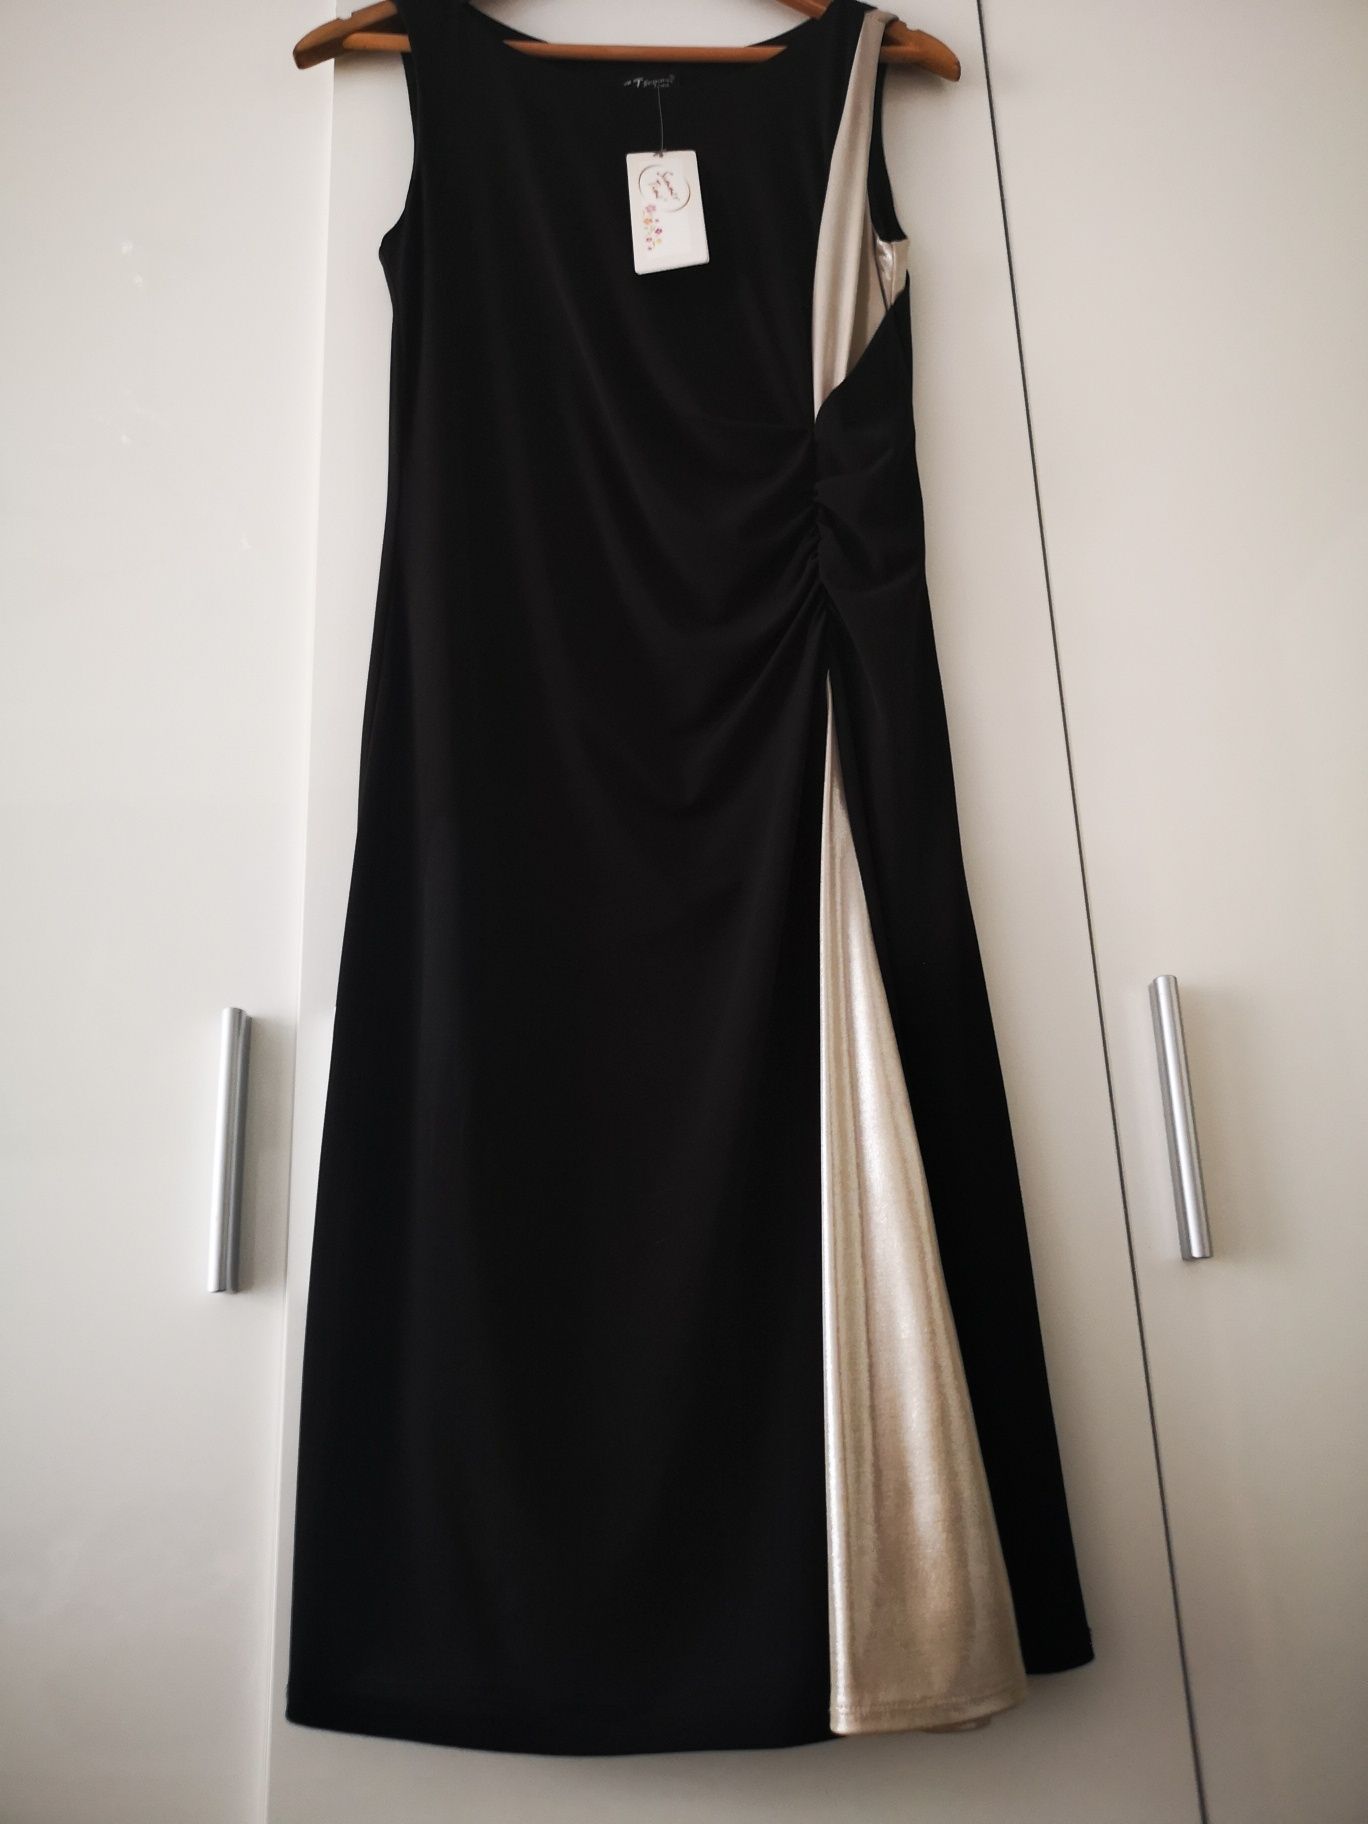 Nowa sukienka czarno-złota r. 38